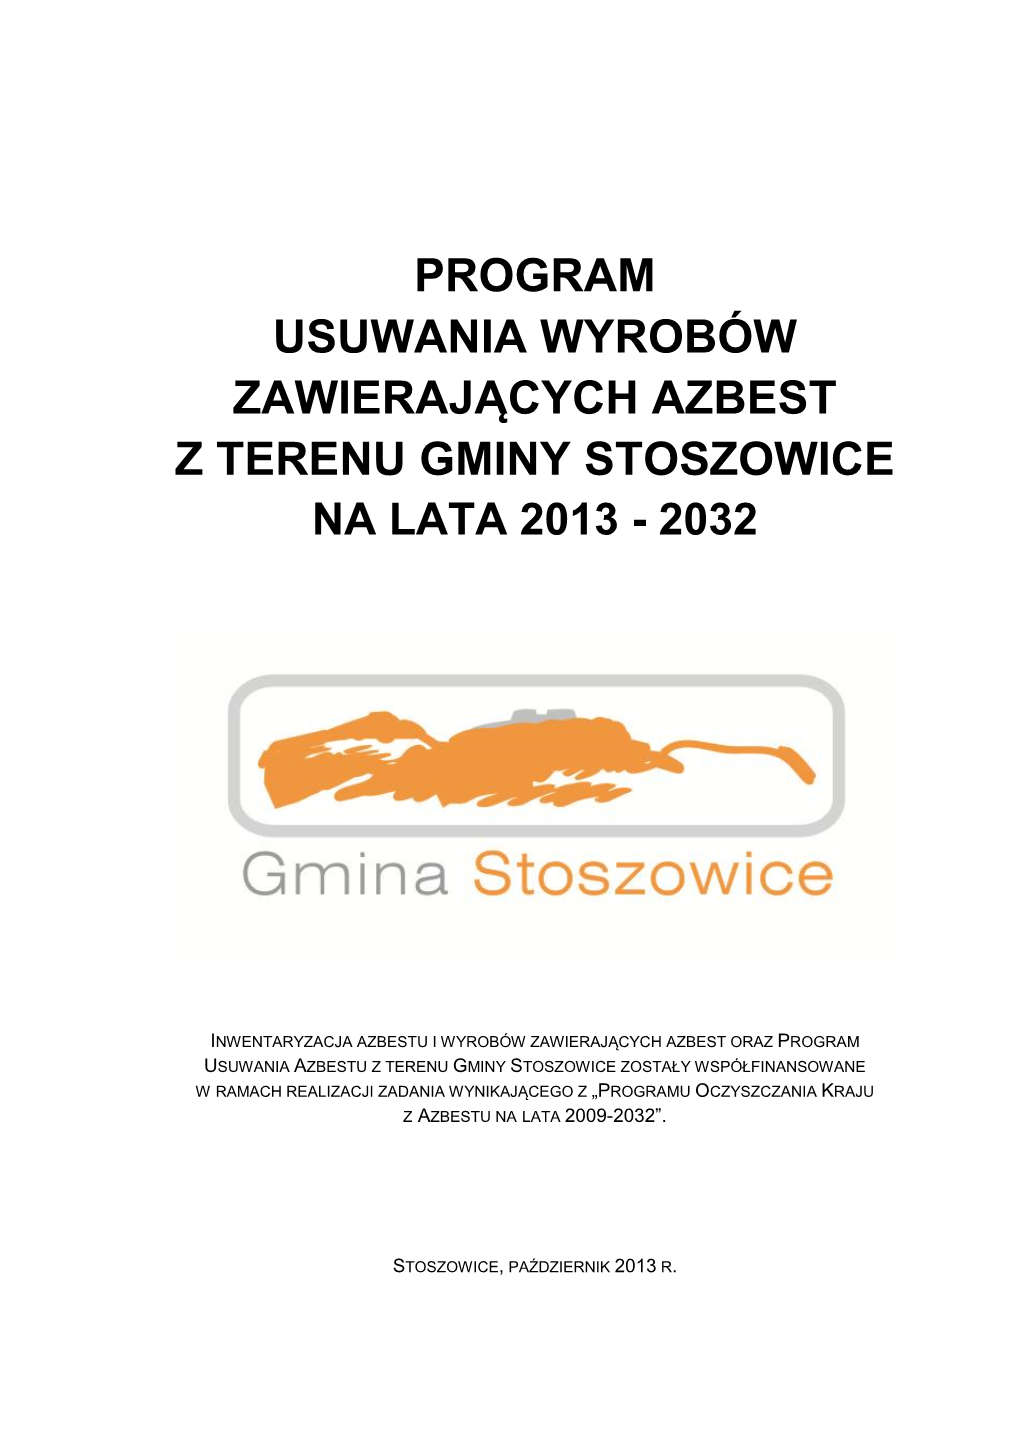 Program Usuwania Wyrobów Zawierających Azbest Z Terenu Gminy Stoszowice Na Lata 2013 - 2032